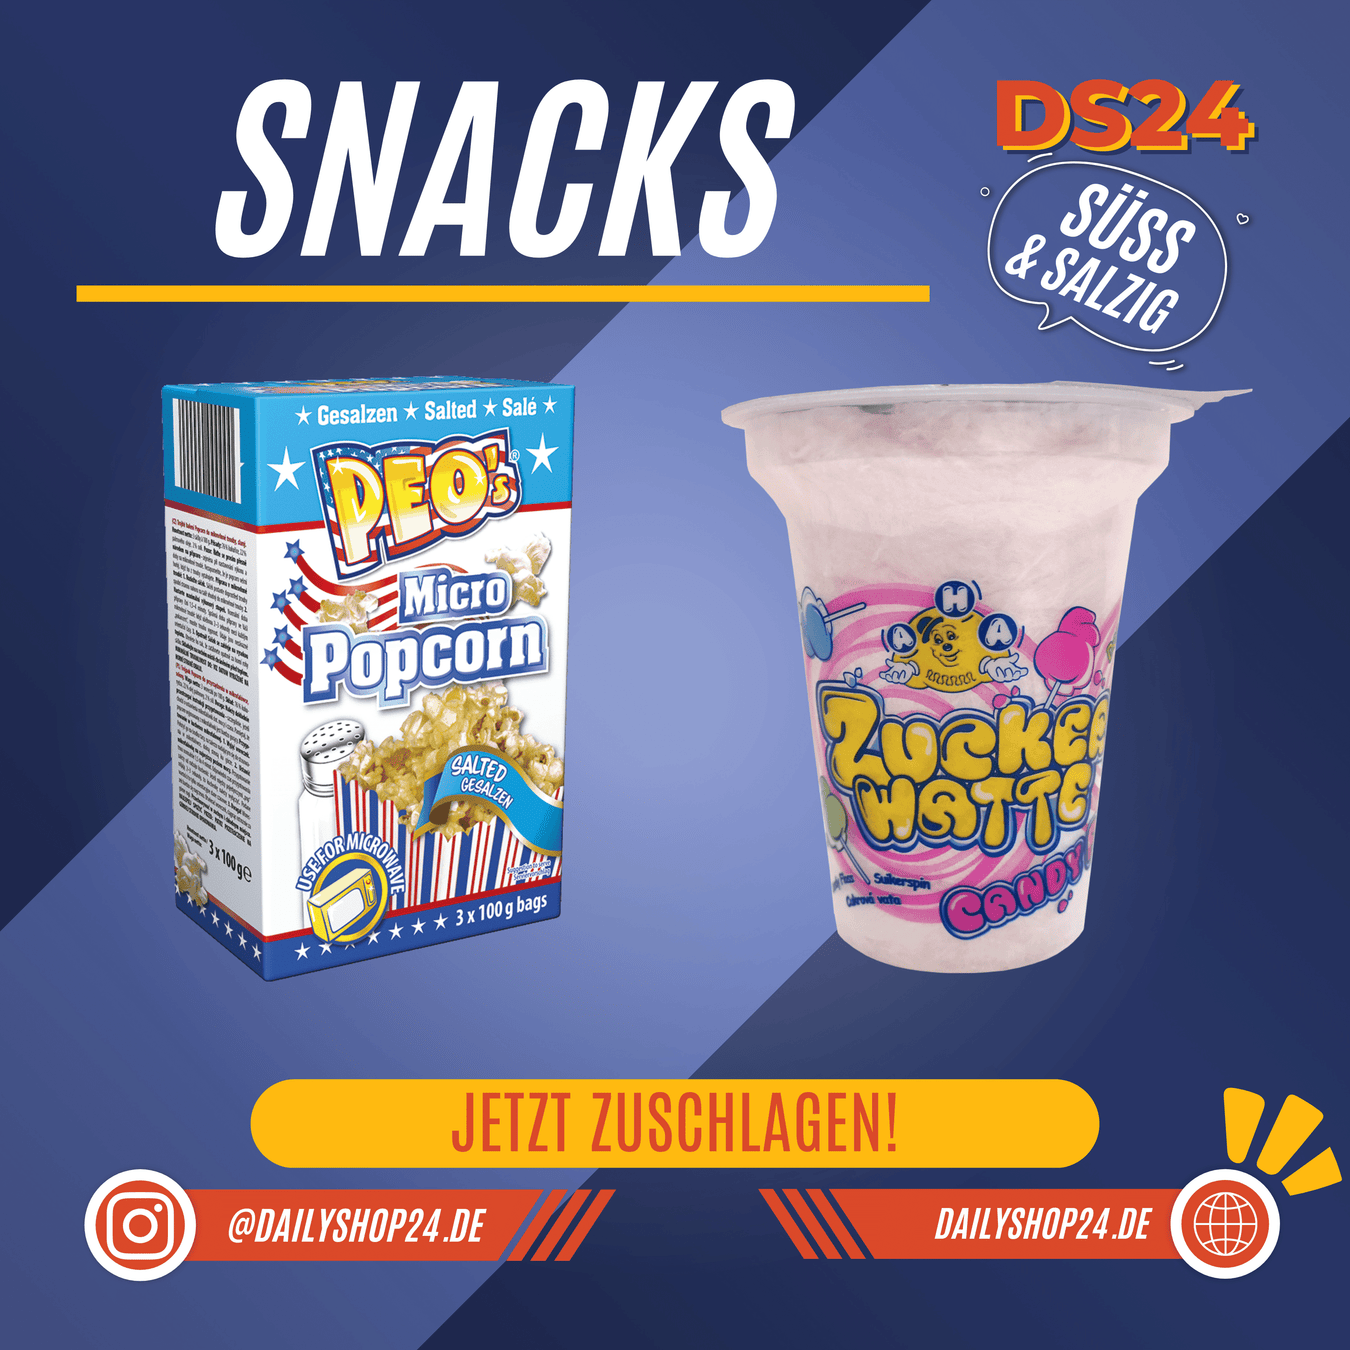 dailyshop24 snacks und süßigkeiten Kategorienbild mit zwei Produkten Peos Popcorn salzig und süß und AHA Zuckerwatte pink